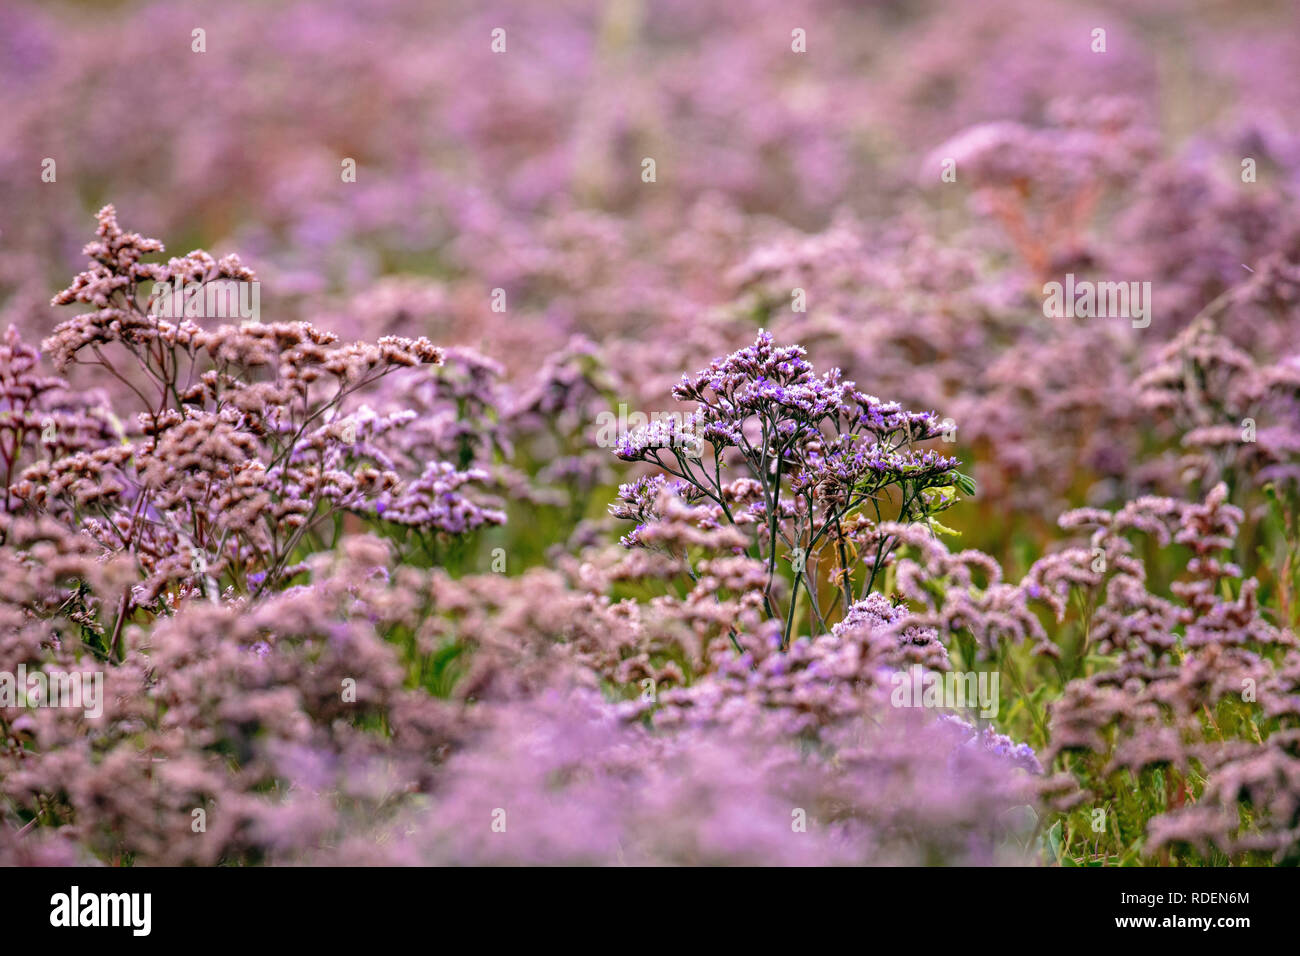 Die Niederlande, Rottumeroog oder Rottum Insel (unbewohnt), vom Wattenmeer die Inseln. Blühende gemeinsame See Lavendel (Limonium vulgare). Stockfoto